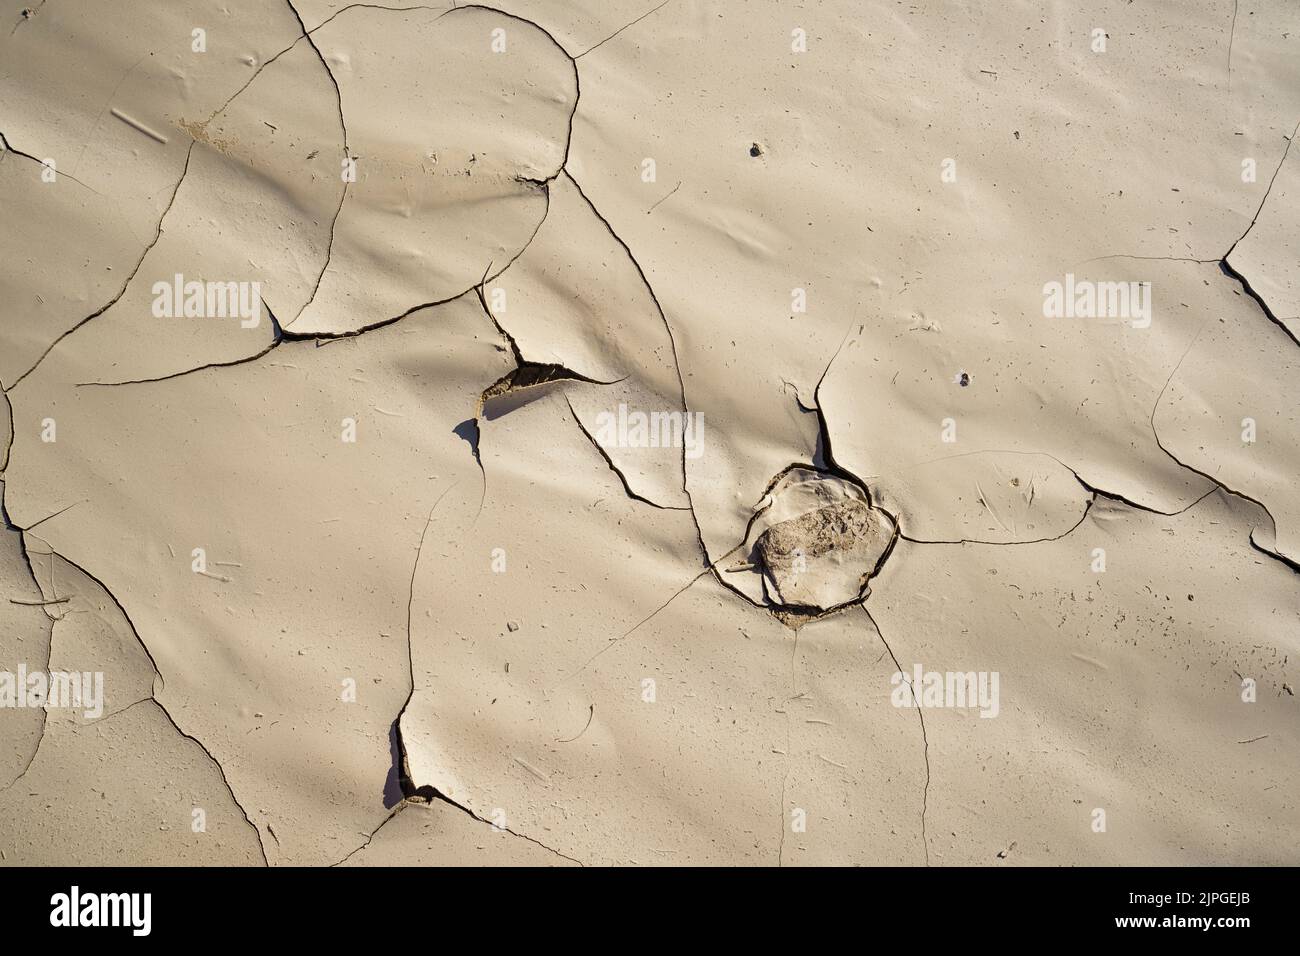 Motifs abstraits d'argile sèche dans un lit de rivière sec. Rivière Swakop, Namibie, Afrique Banque D'Images